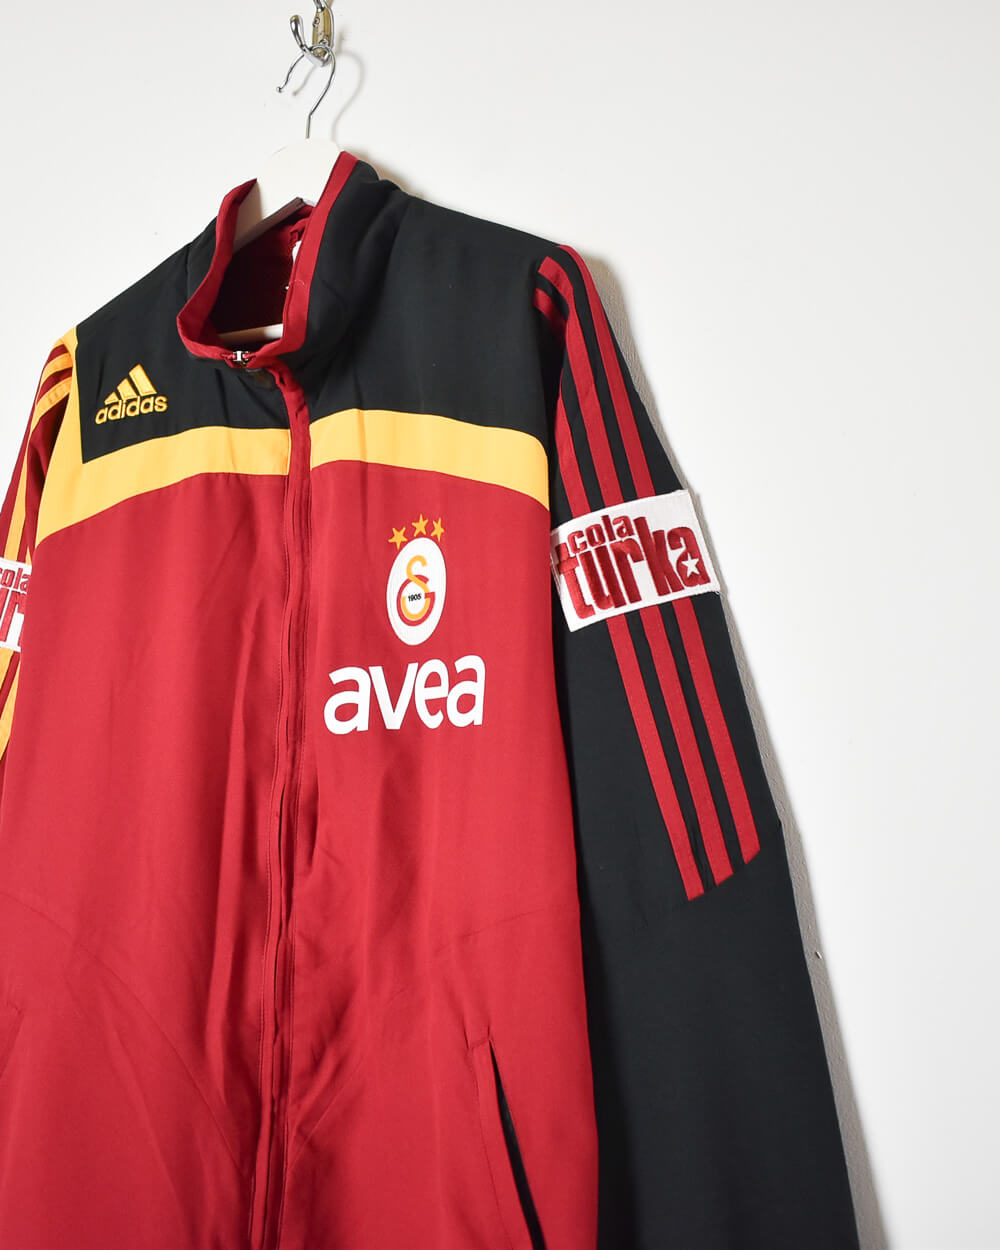 Maroon Adidas Galatasaray S.K. Windbreaker Jacket - Large